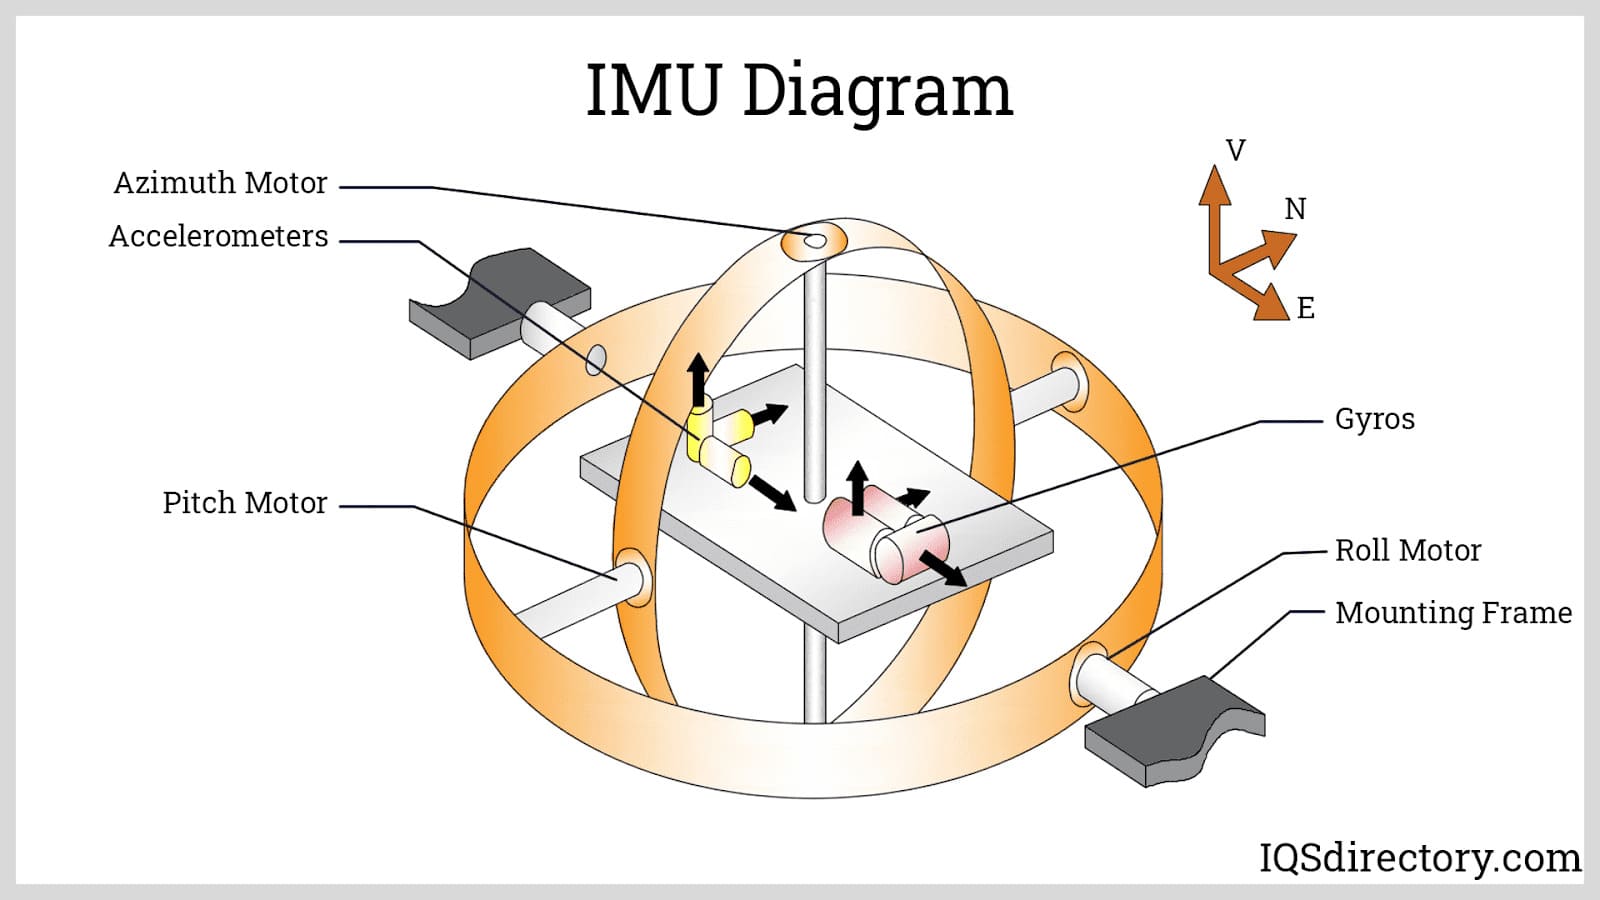 IMU Diagram